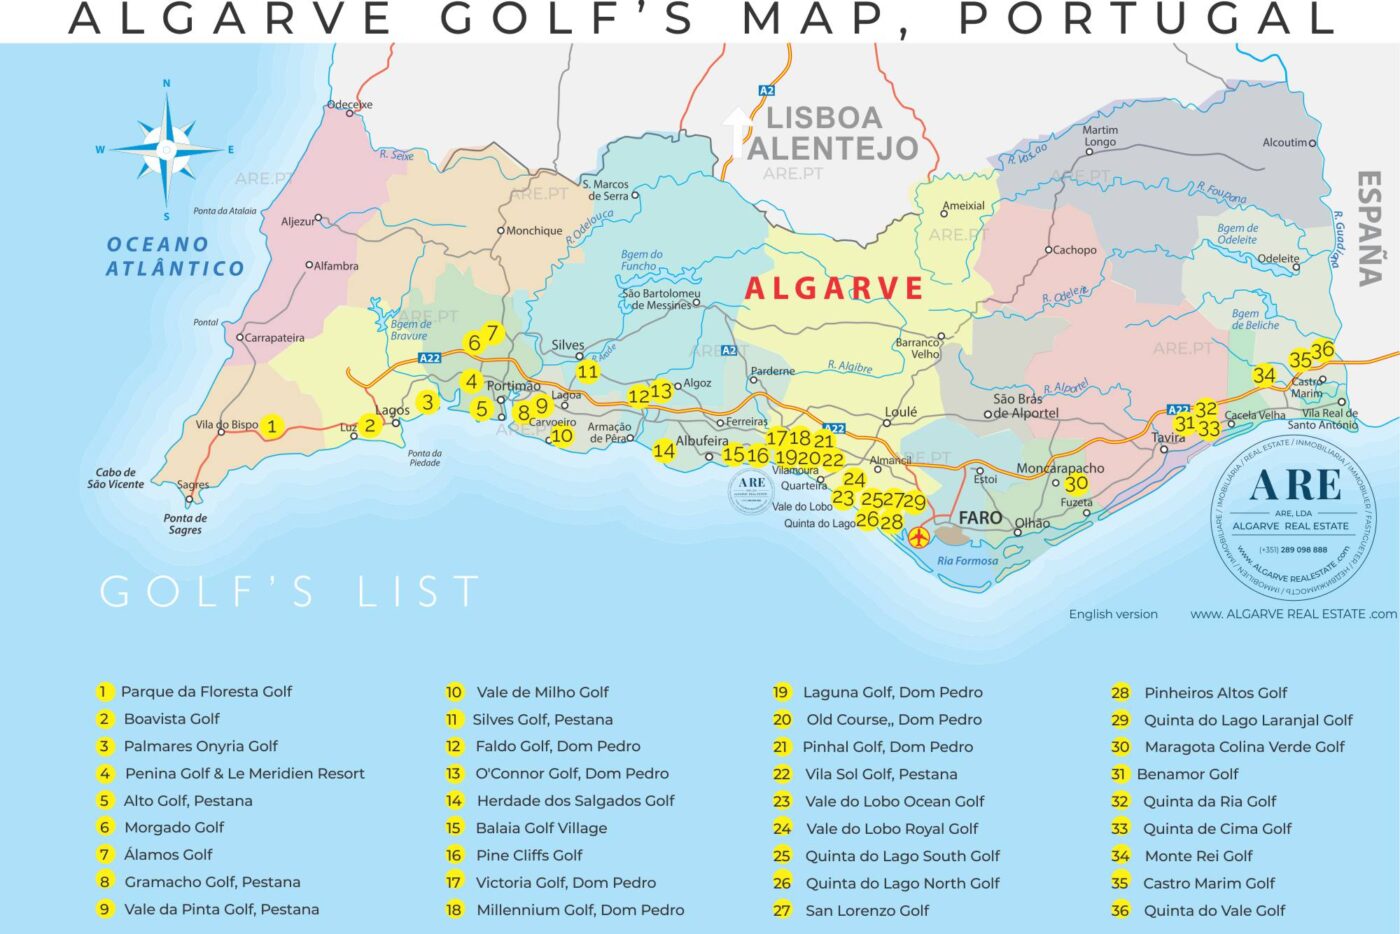 Mapa do Algarve com indicação de 36 campos de golfe espalhados pelos 16 concelhos.